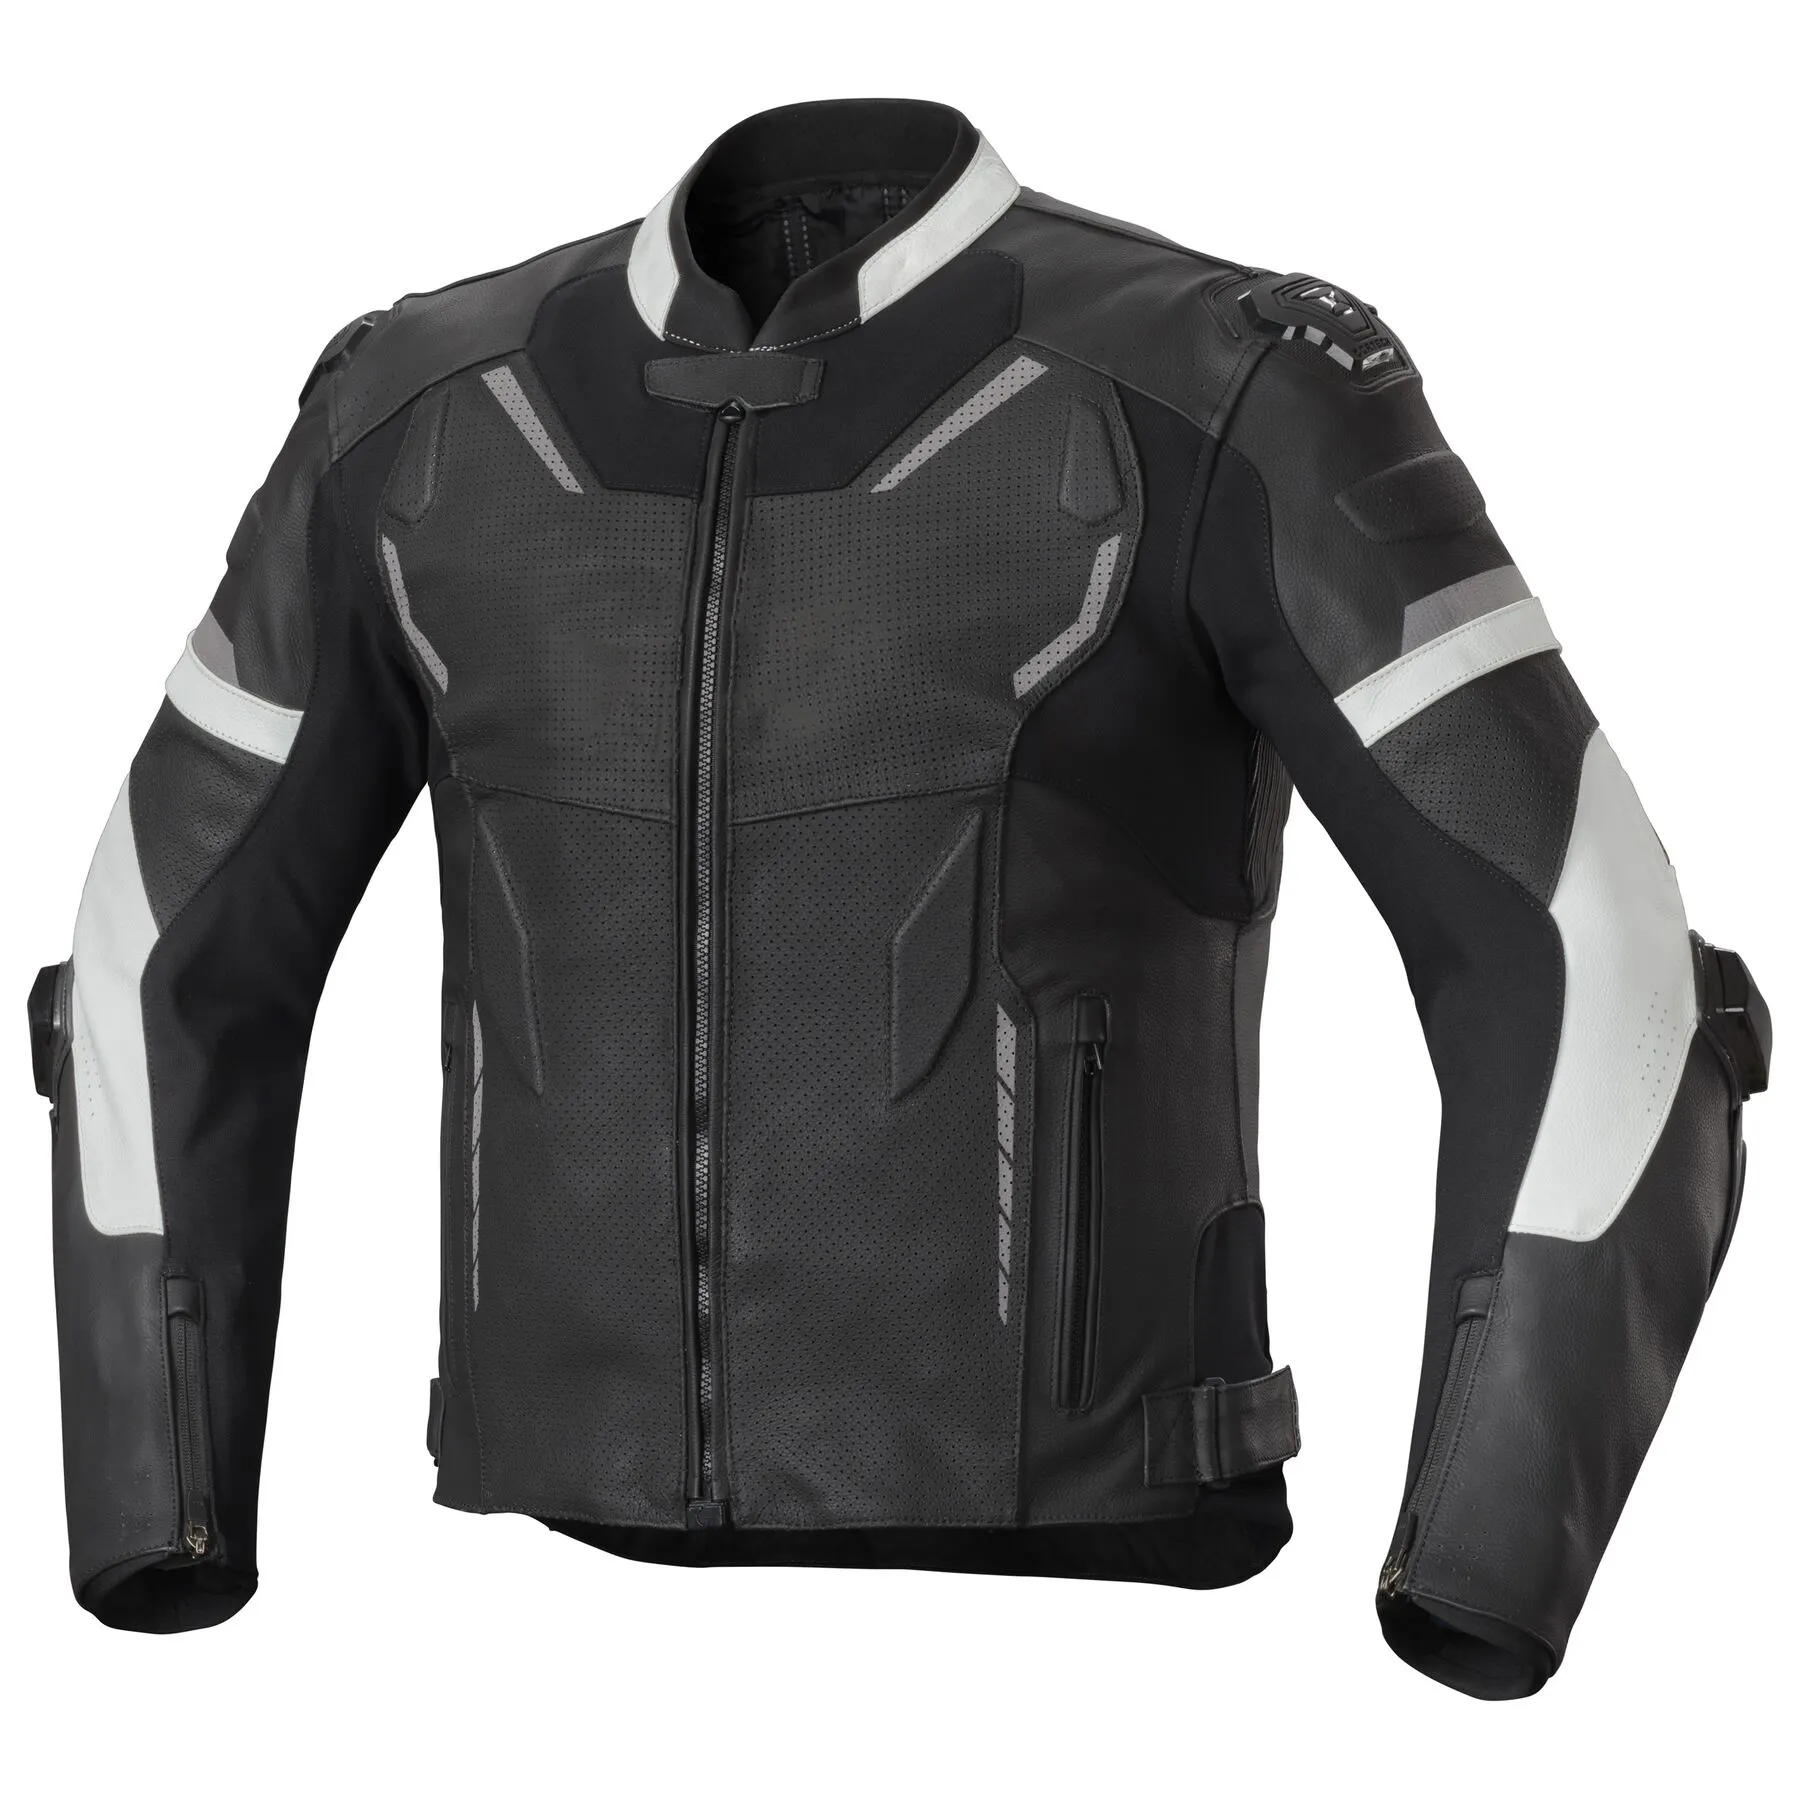 Jaket sepeda motor untuk pria jaket sepeda motor tekstil pengendara sepeda motor balap Cordura disetujui tahan air semua cuaca